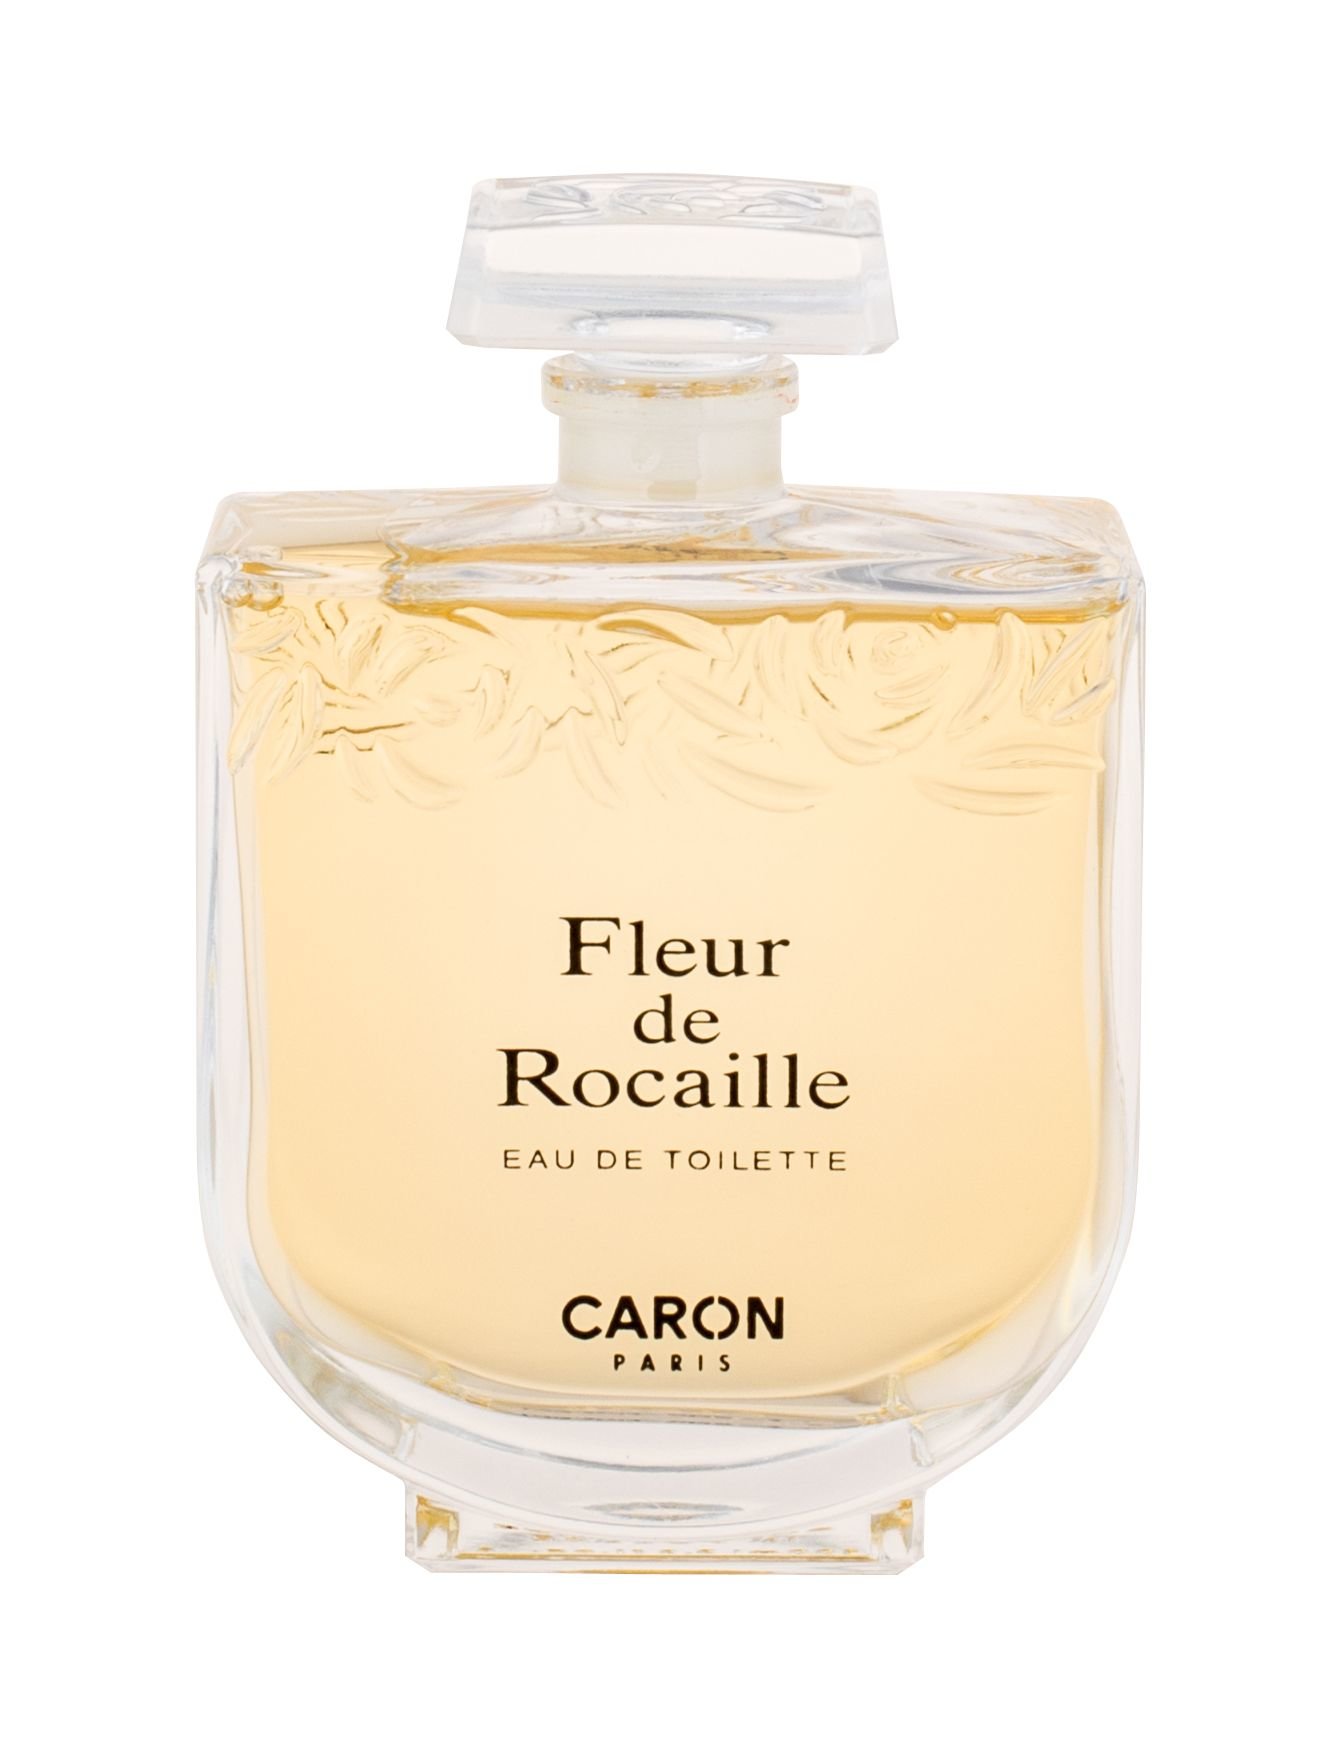 Caron Fleur de Rocaille